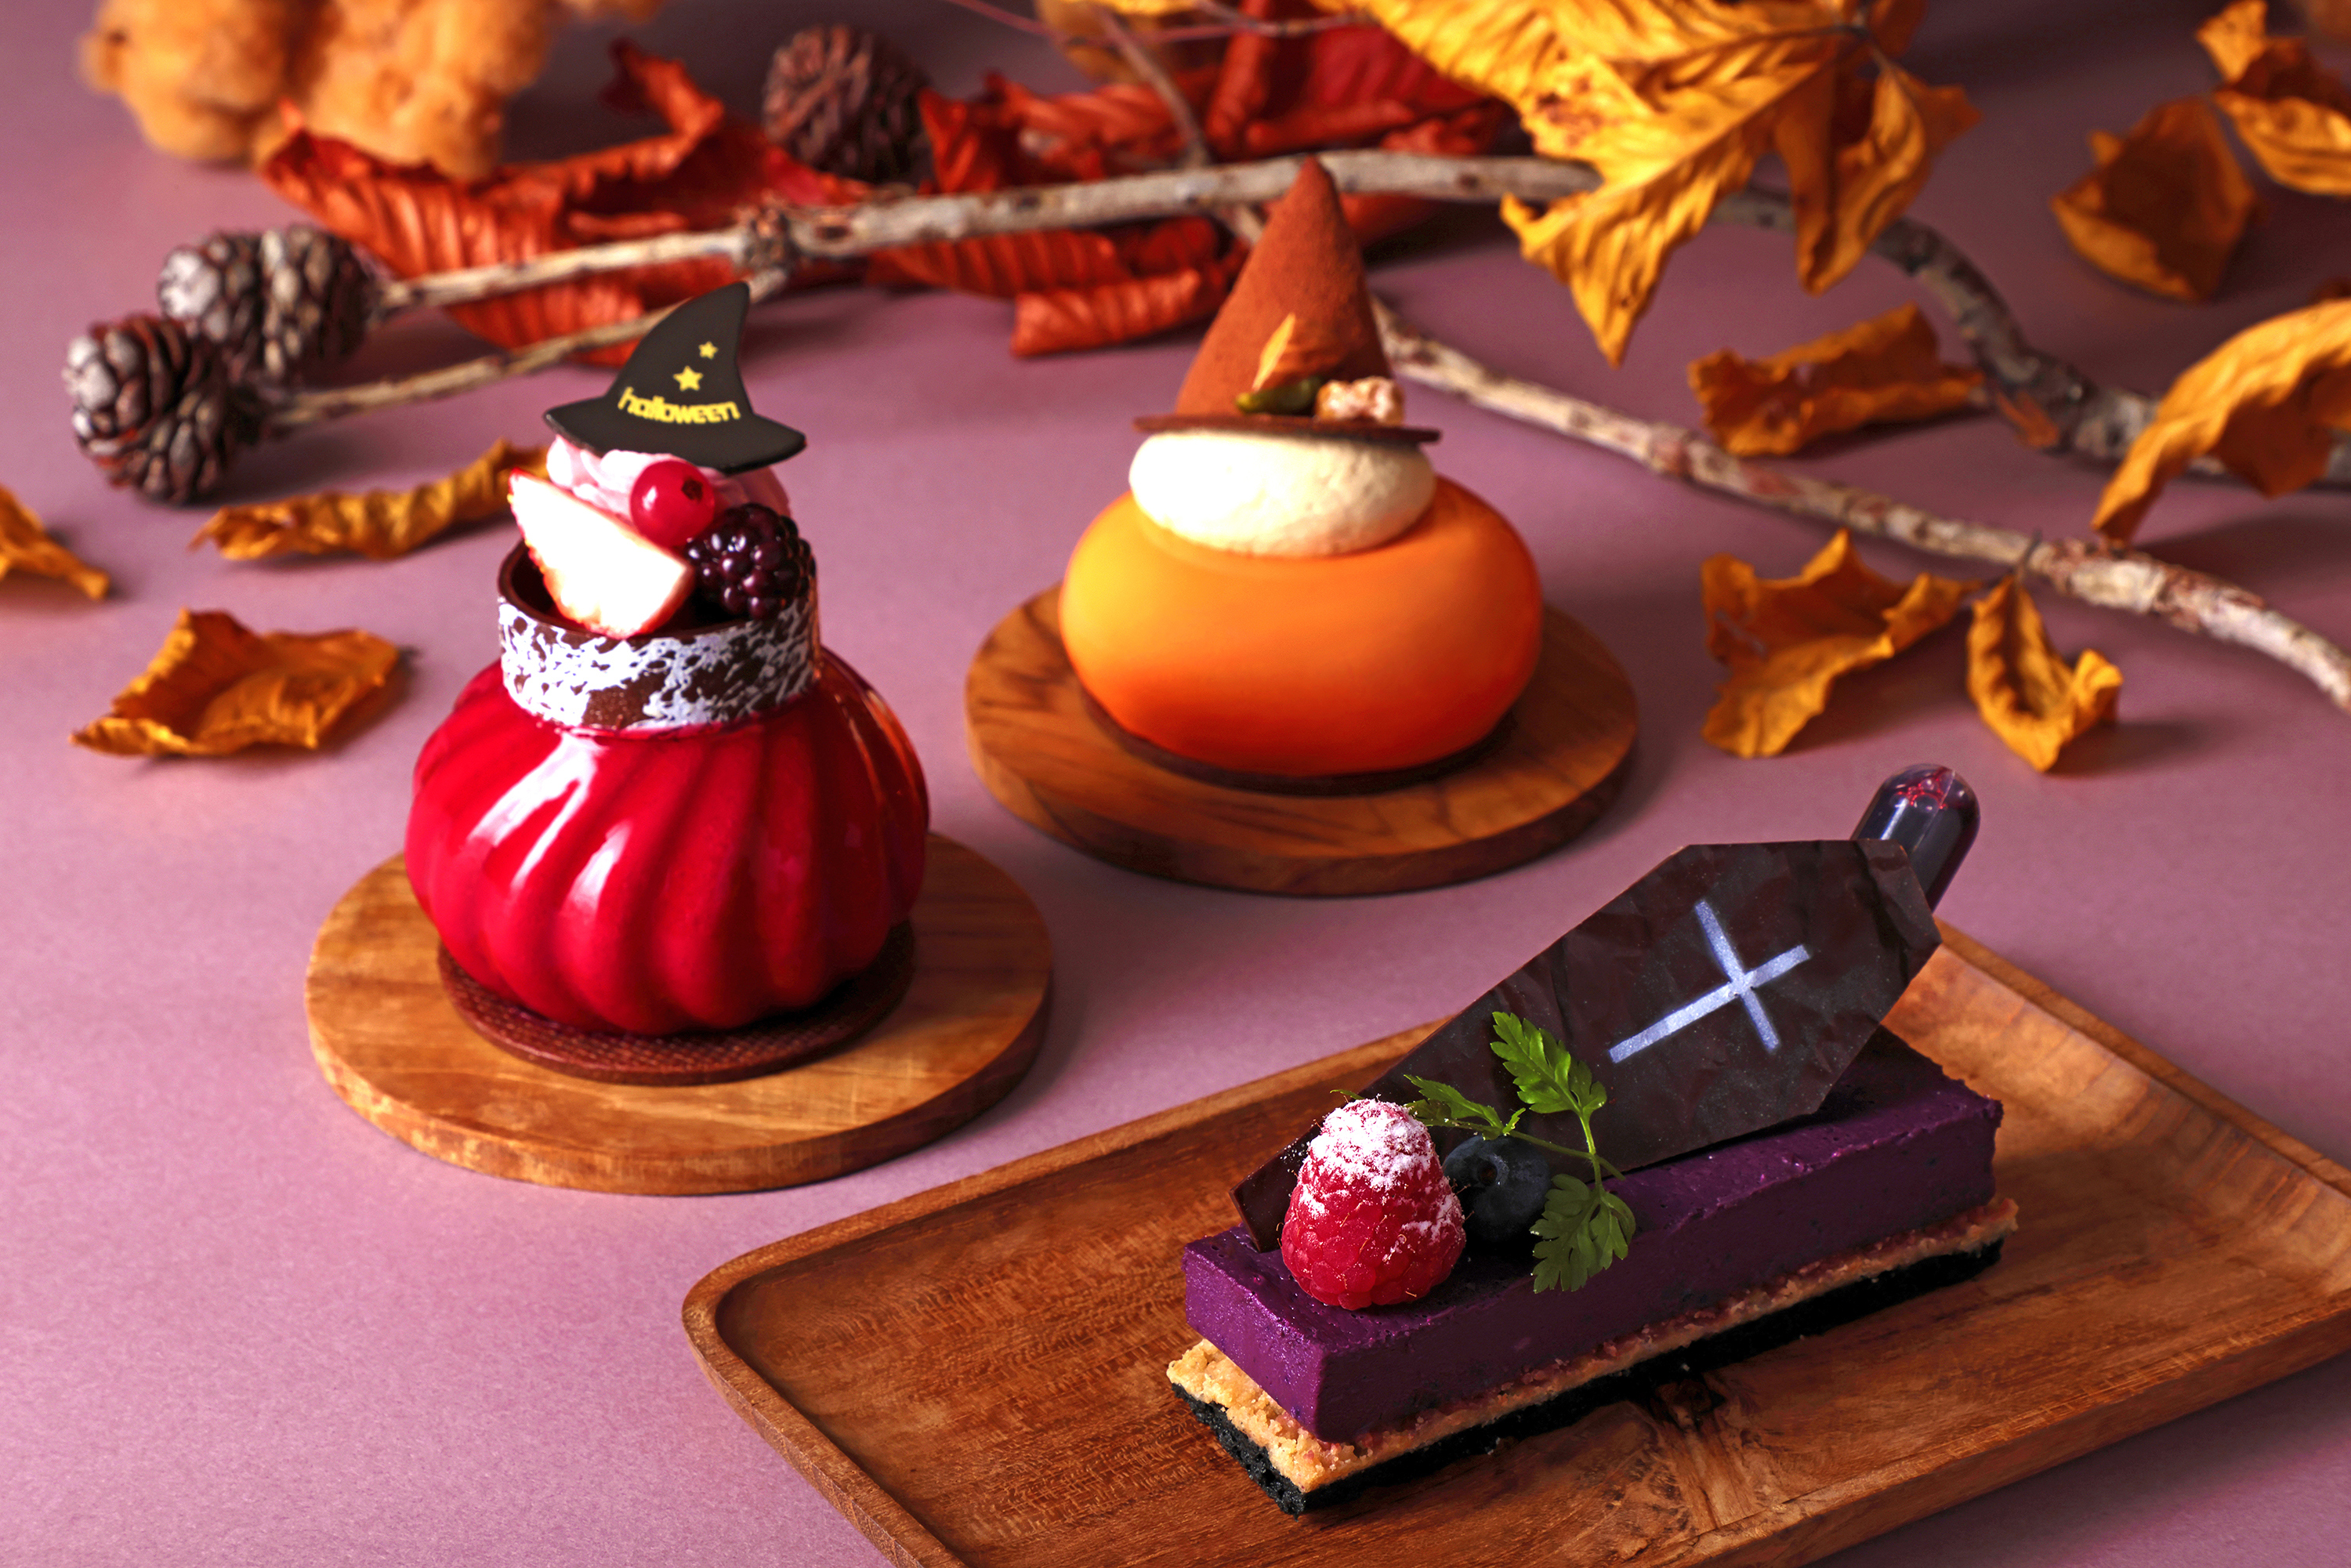 ハロウィンをテーマにしたパン・スイーツ・総菜のテイクアウトメニューが勢揃いグルメブティック メリッサ「秋の収穫祭」のサブ画像1_「秋の収穫祭」 ケーキイメージ